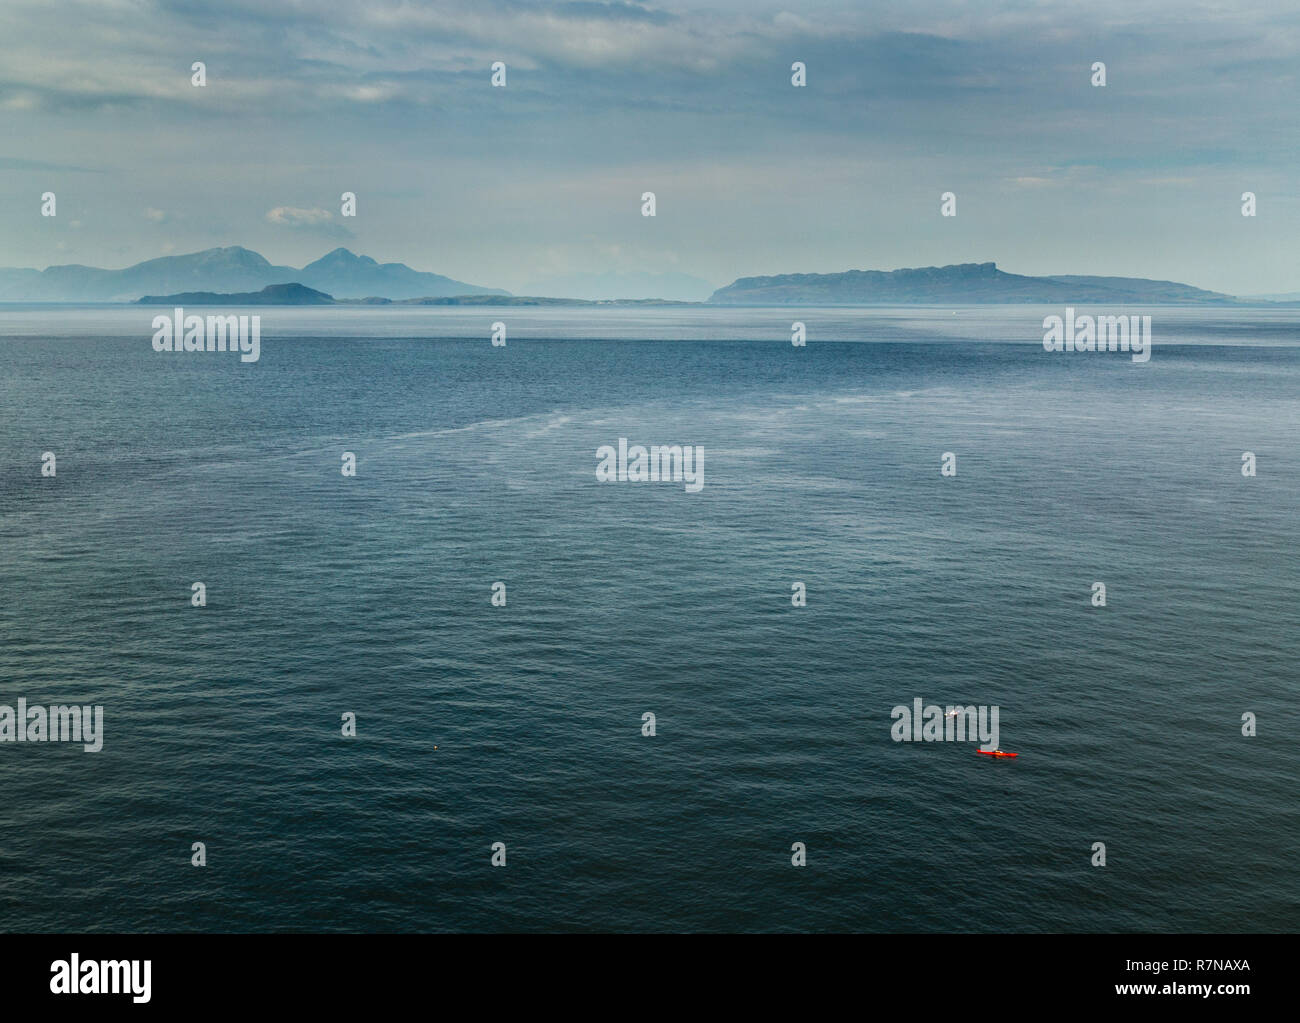 Le point de vue de la petites îles (Rum, Eigg et fumier) d'en bas 38 Phare. Il y a deux les kayakistes de mer visible dans l'avant-plan. Banque D'Images